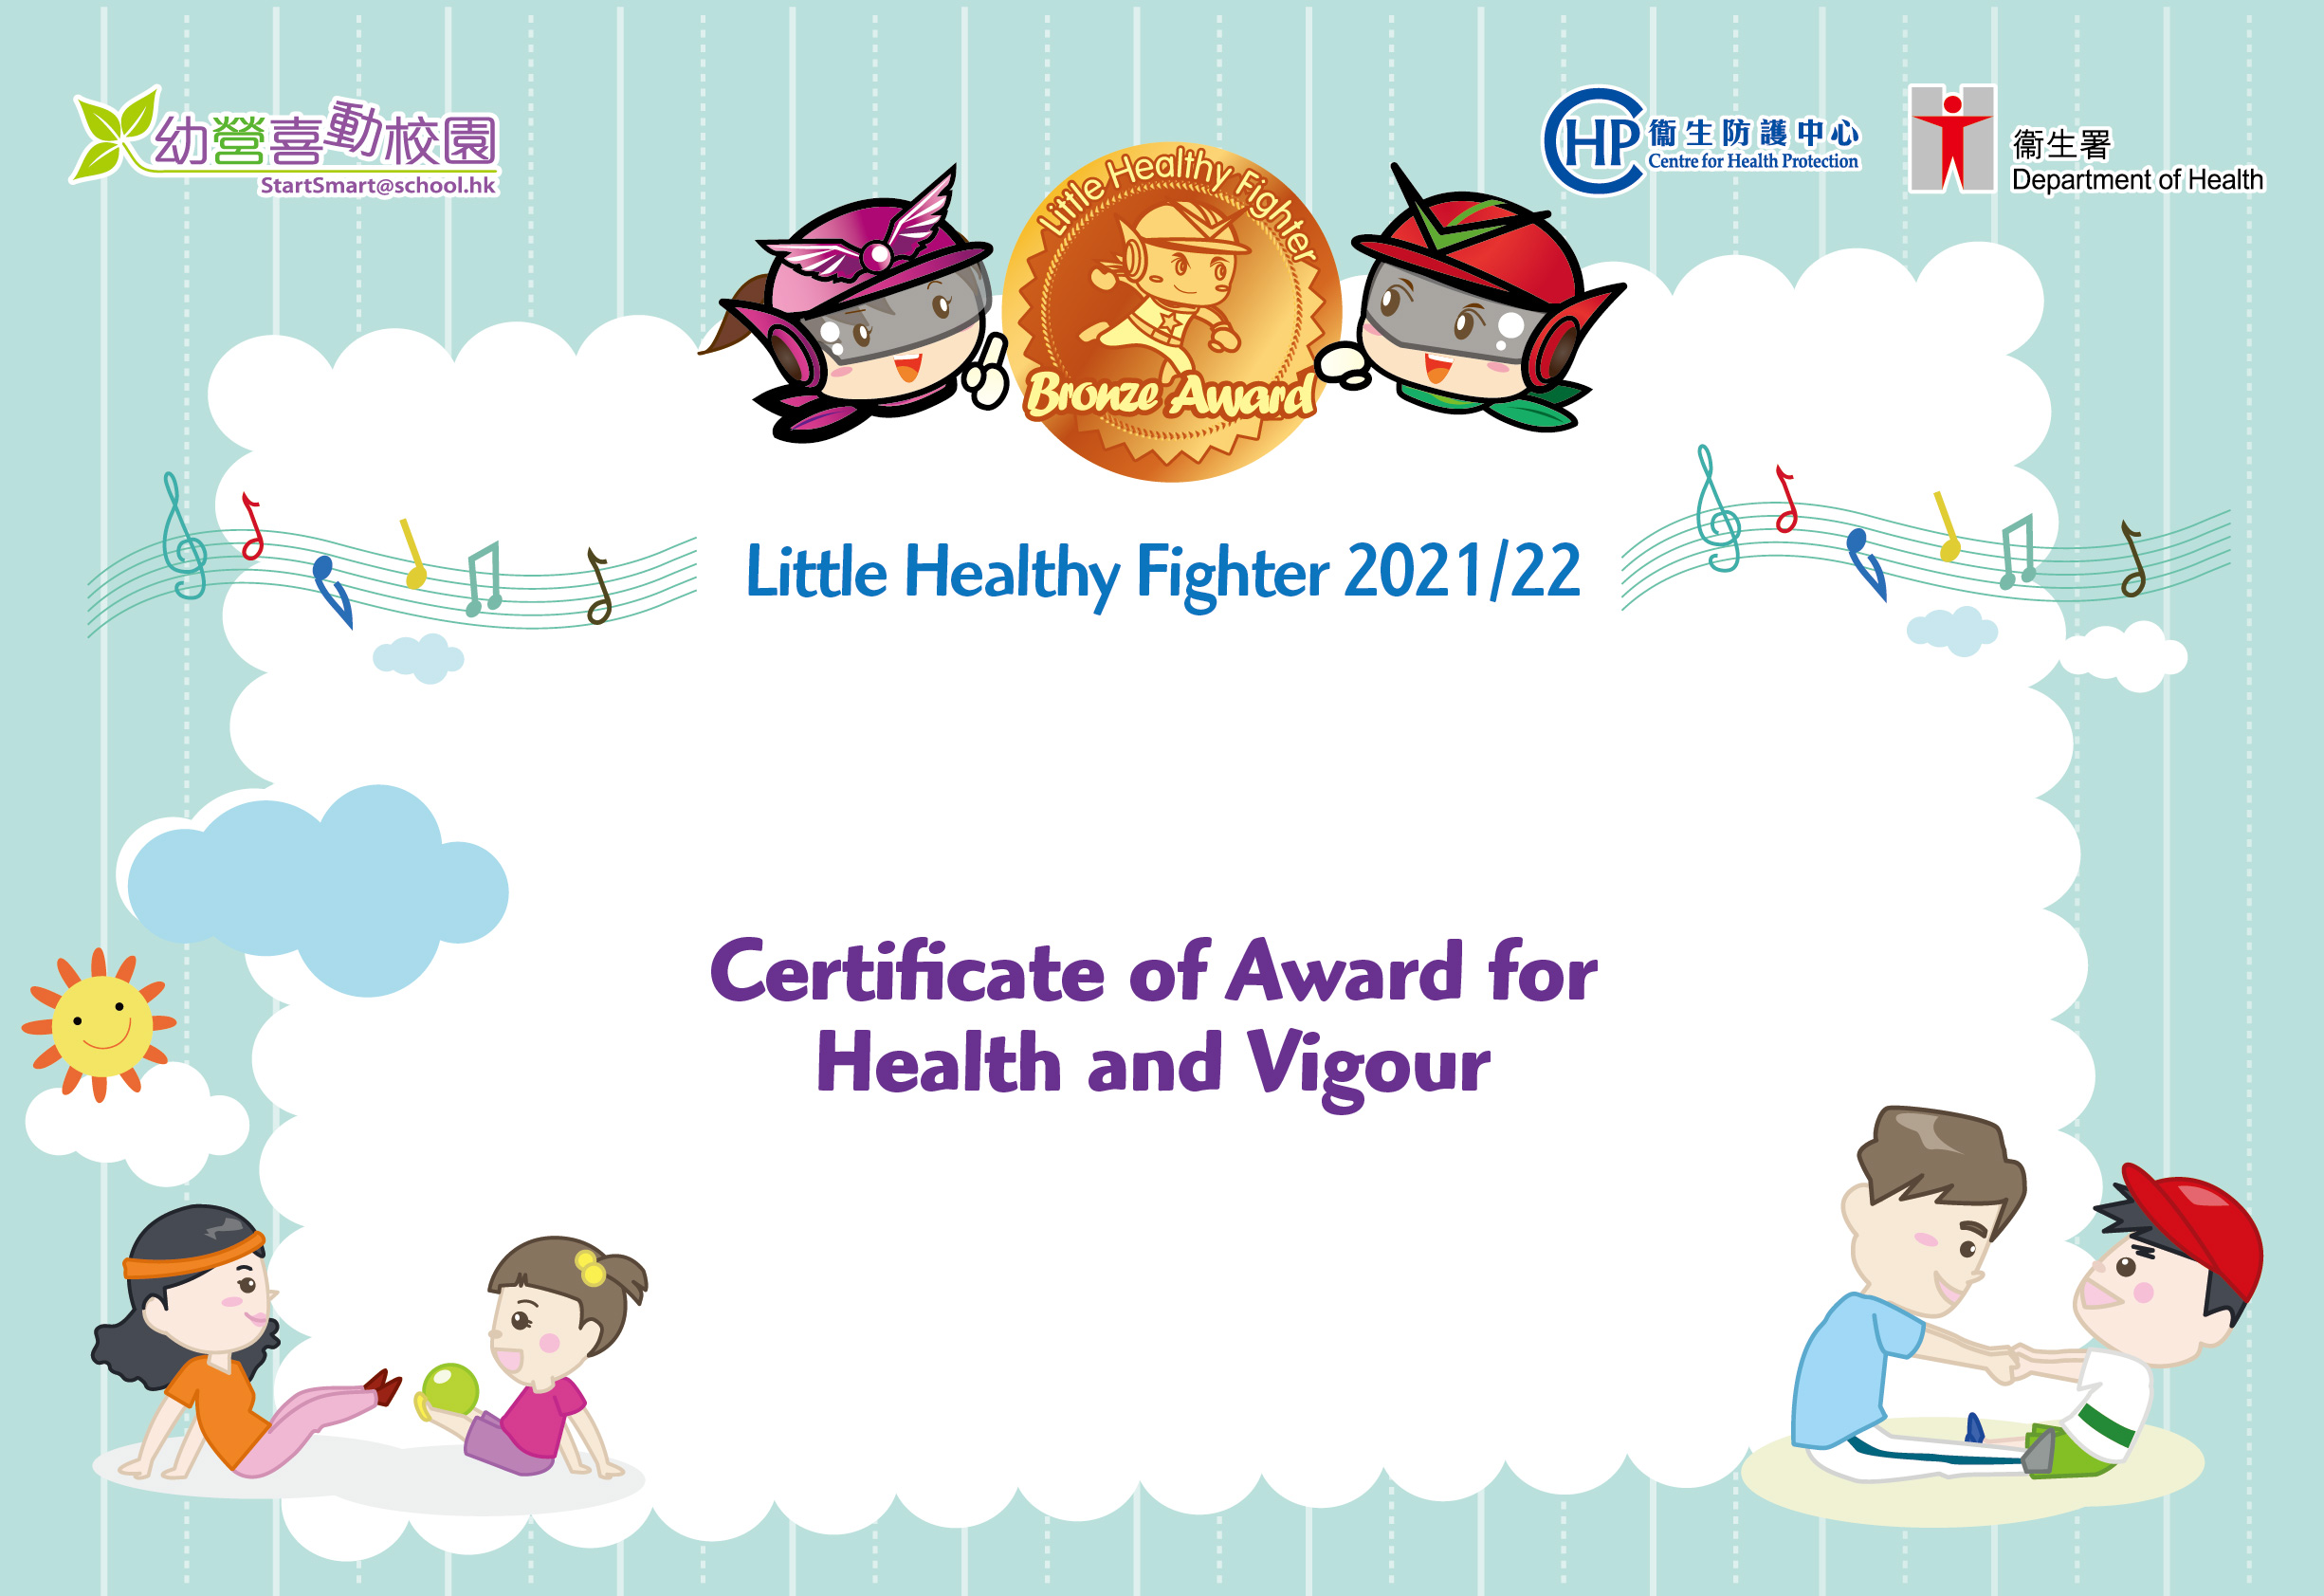 Bronze Award for Health and Vigour